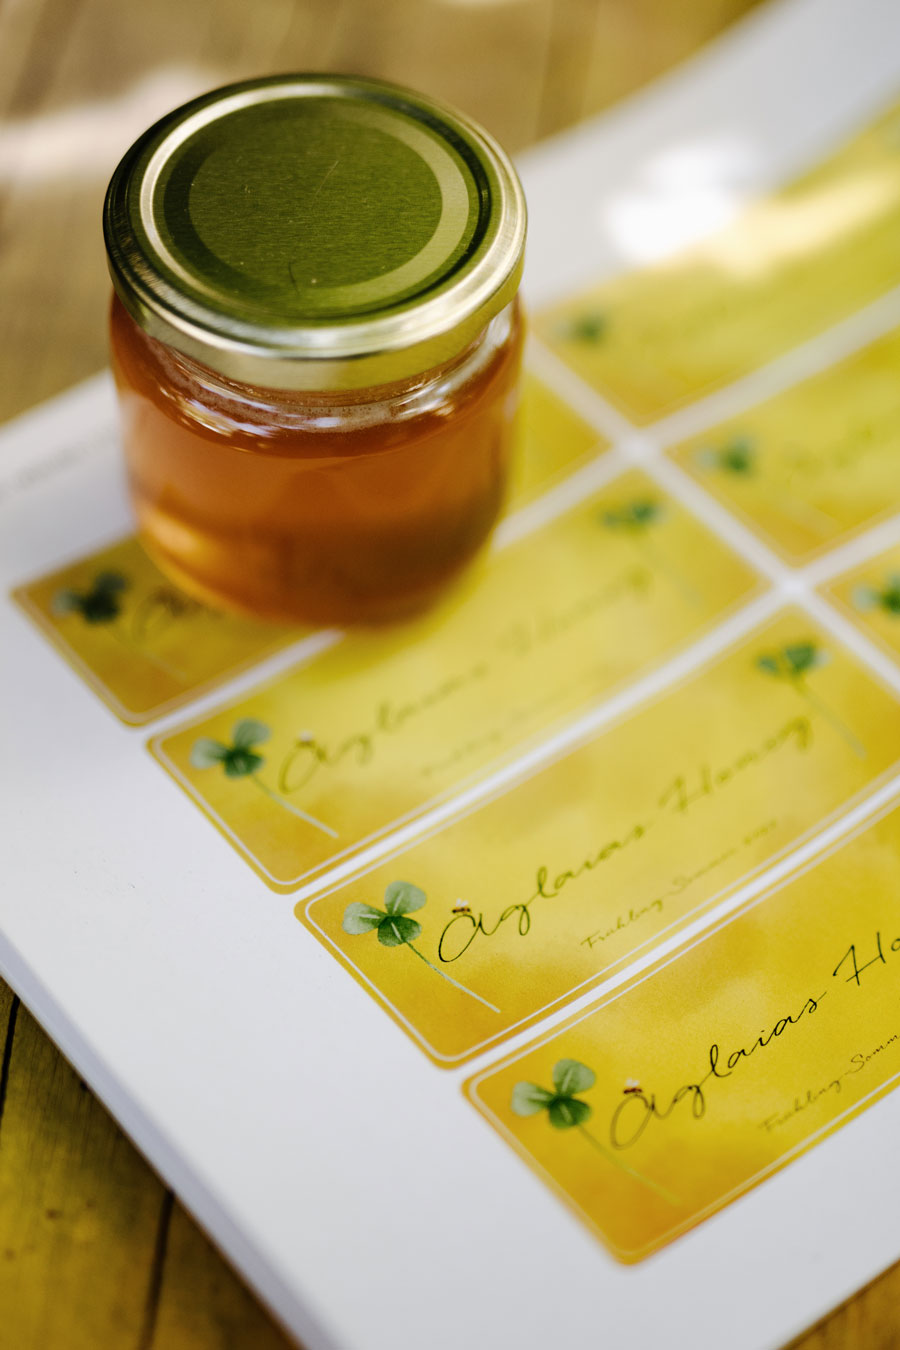 Honigetiketten, Etiketten, Honiglabel, Honigglas, Strohbeute, Einraumbeute, Mellifera, Honigernte, wesensgemäße Bienenhaltung